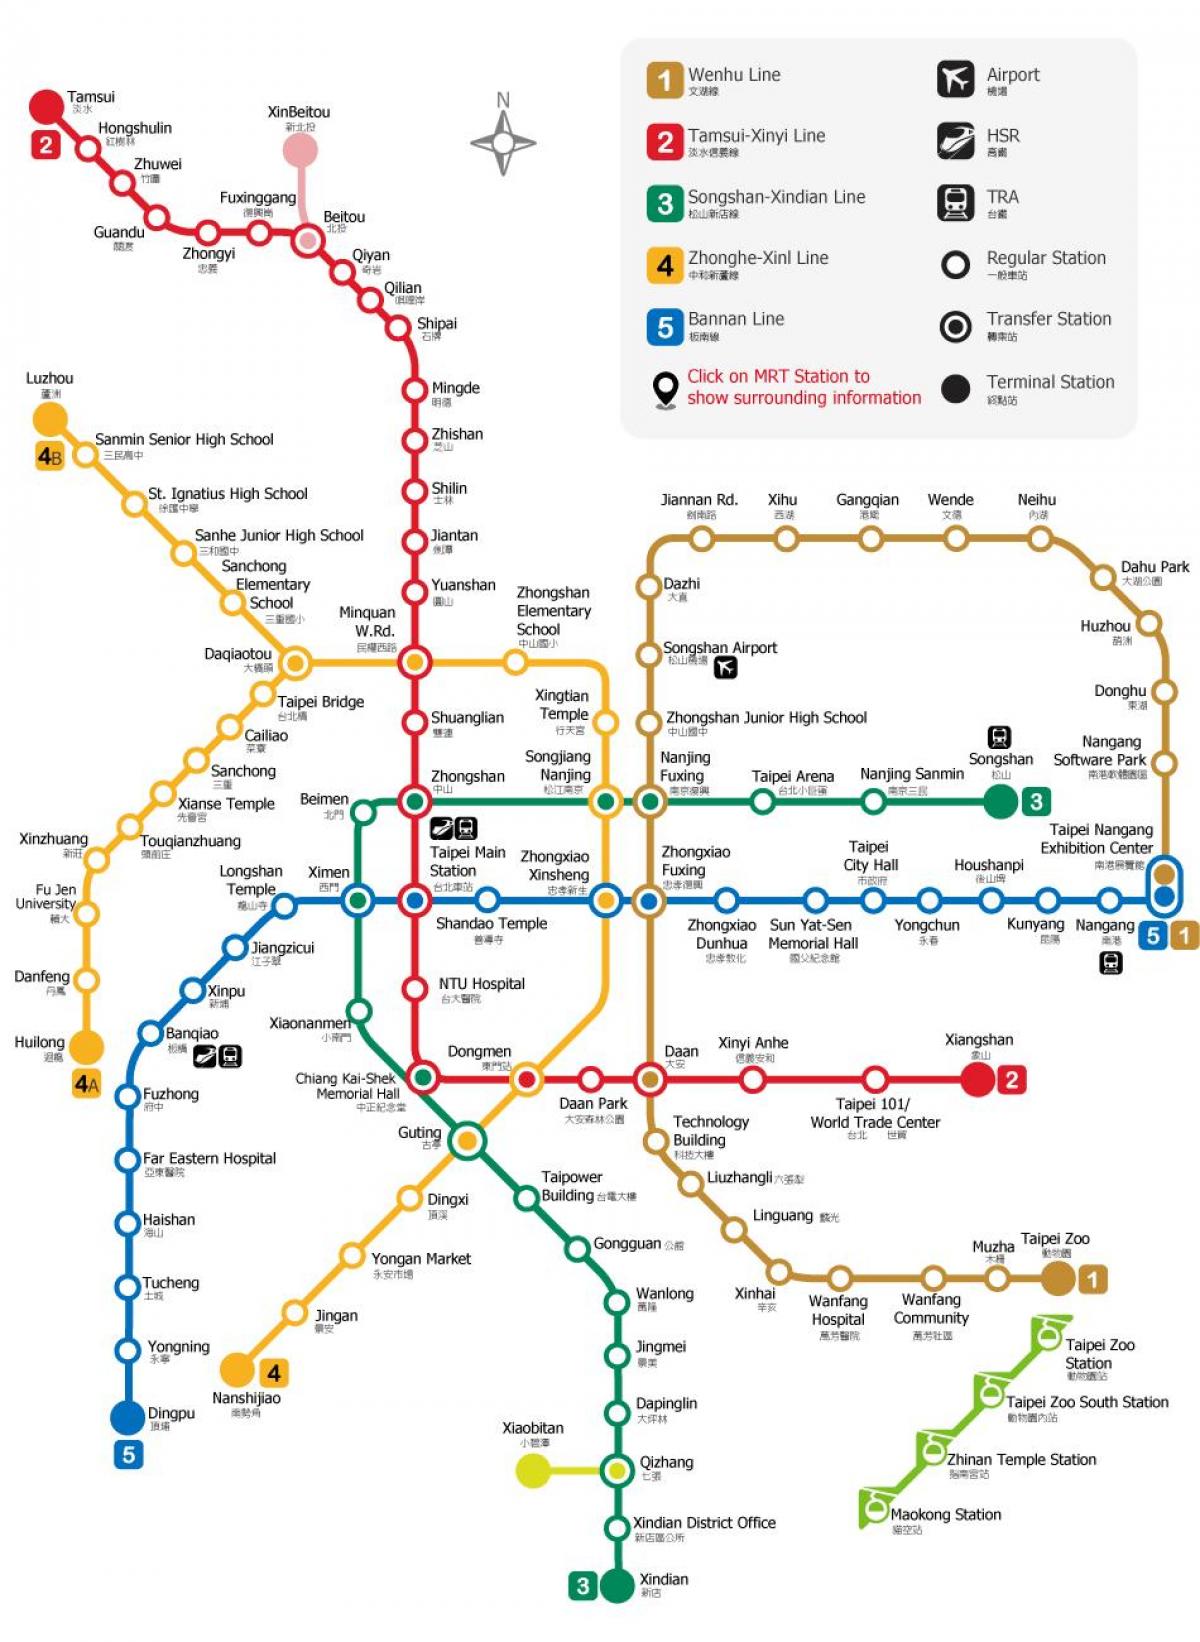 tpe एमआरटी का नक्शा